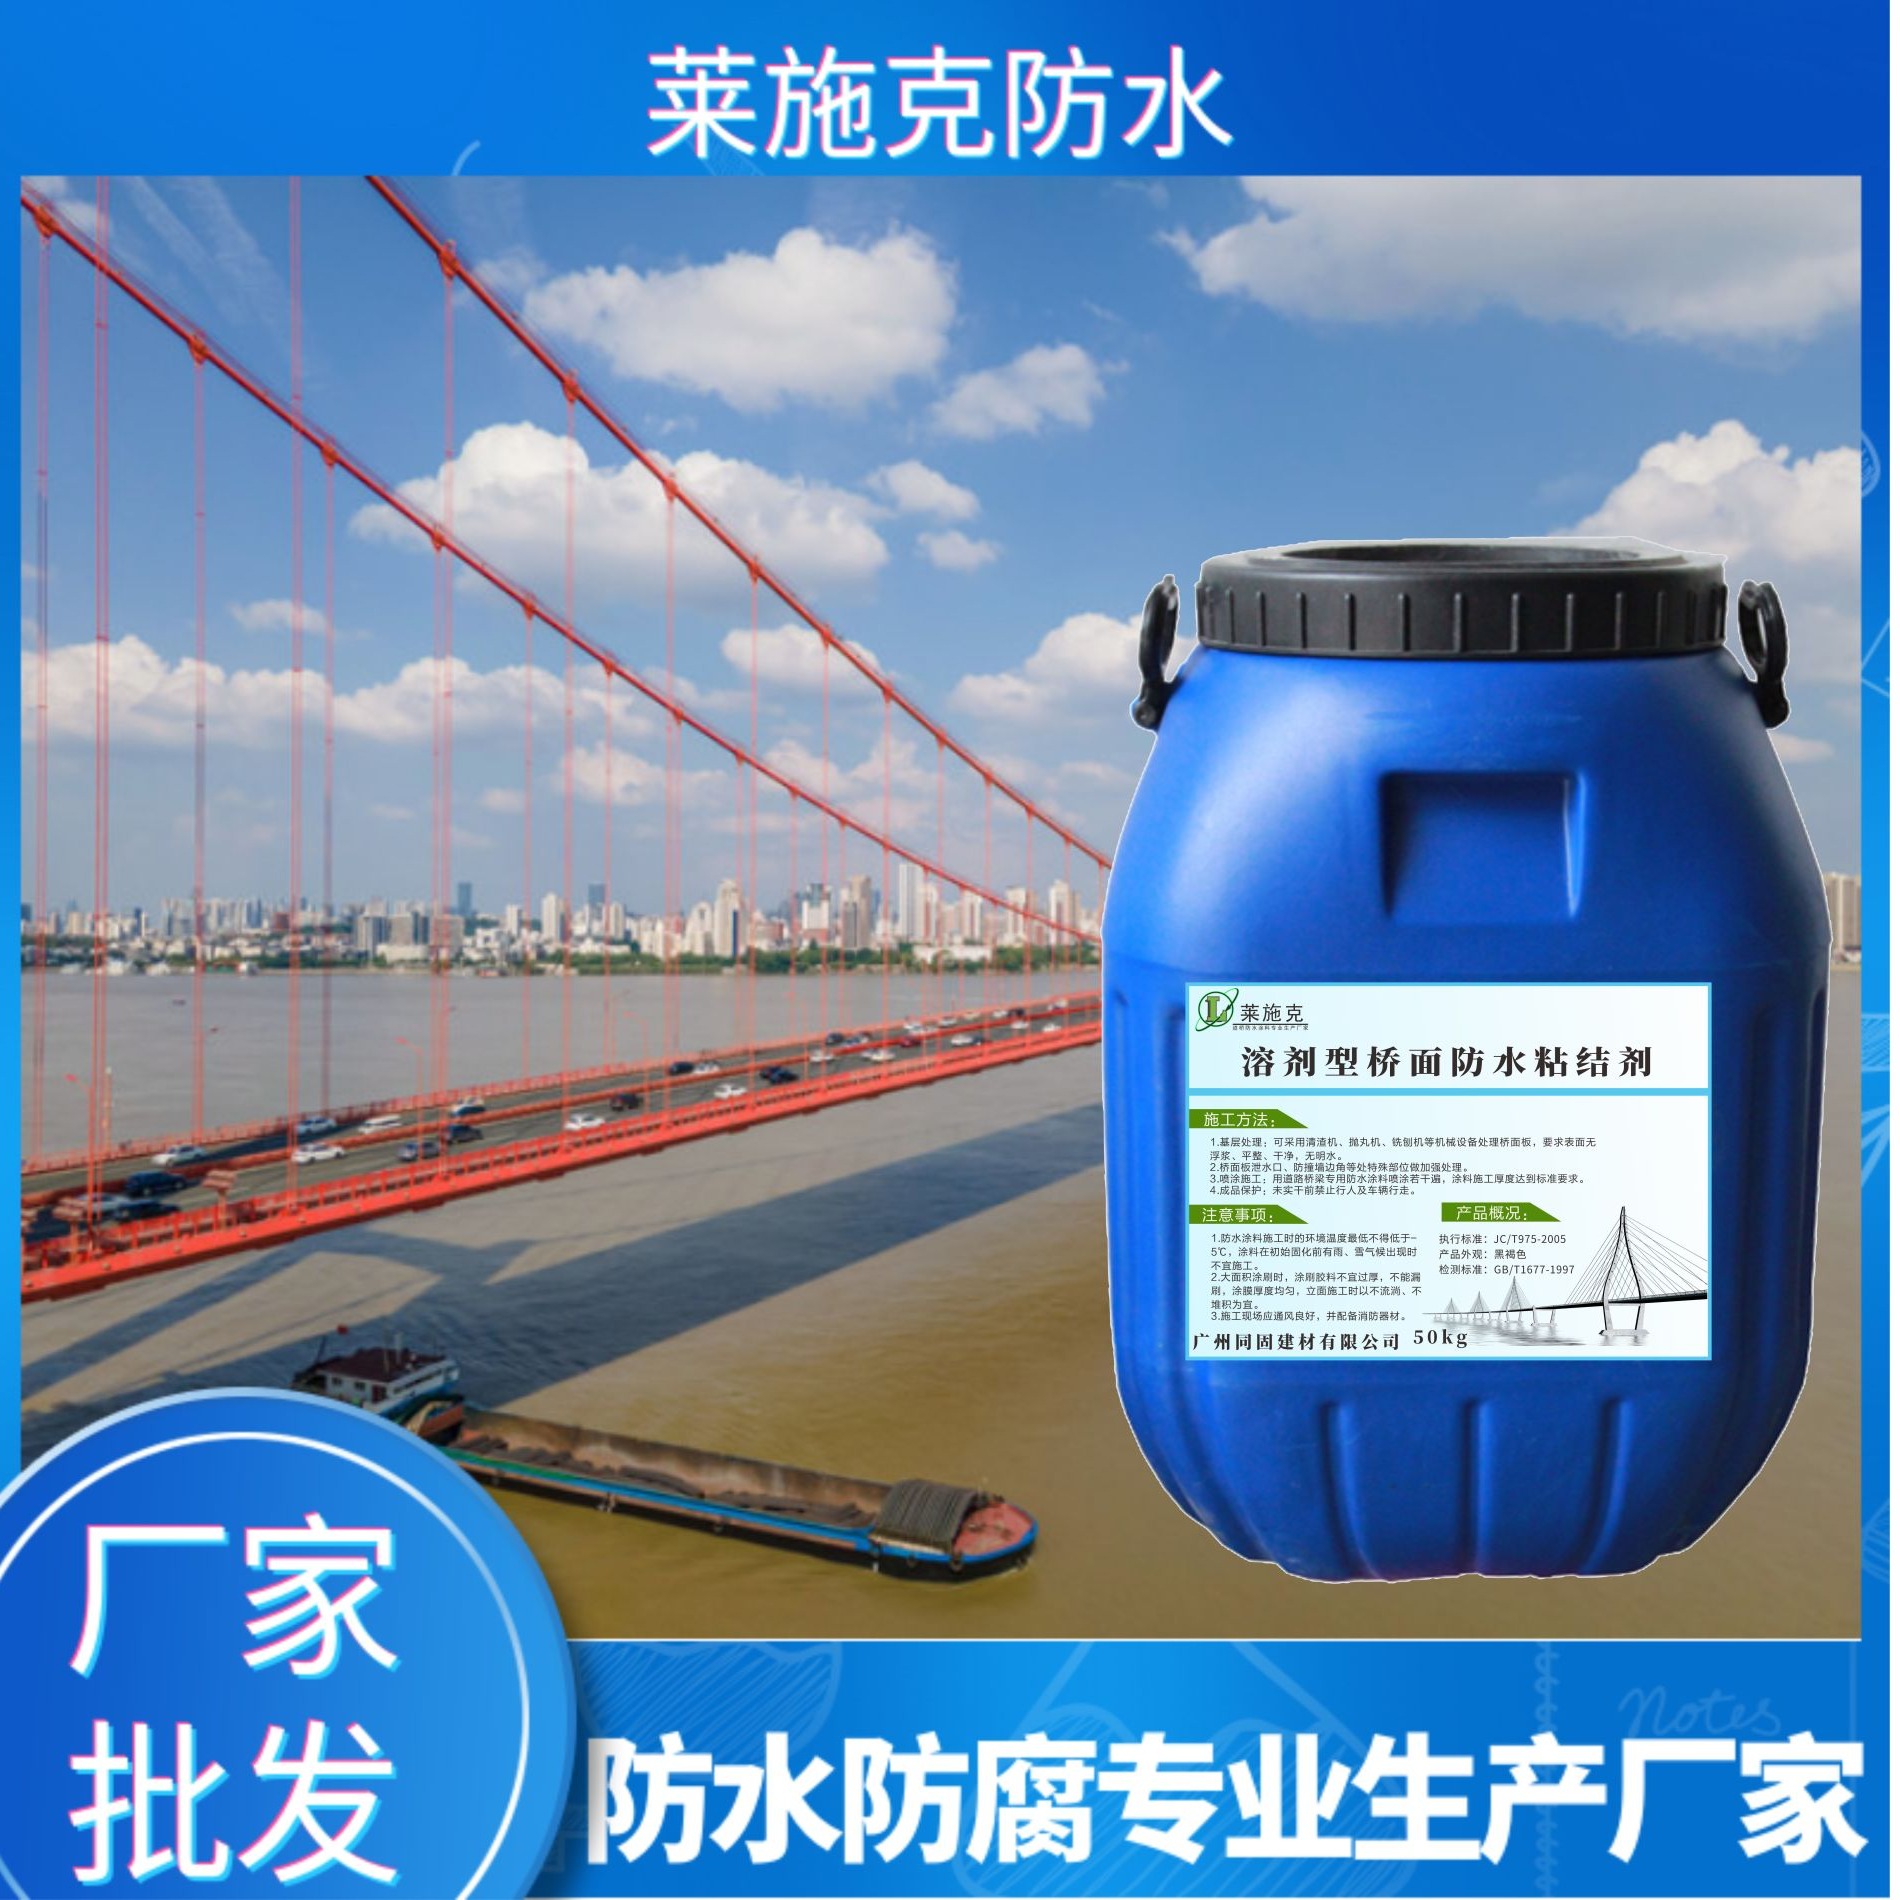 广州莱施克桥梁防水粘结剂 溶剂型防水粘结材料 桥面防水涂料 防水性好 高固含量